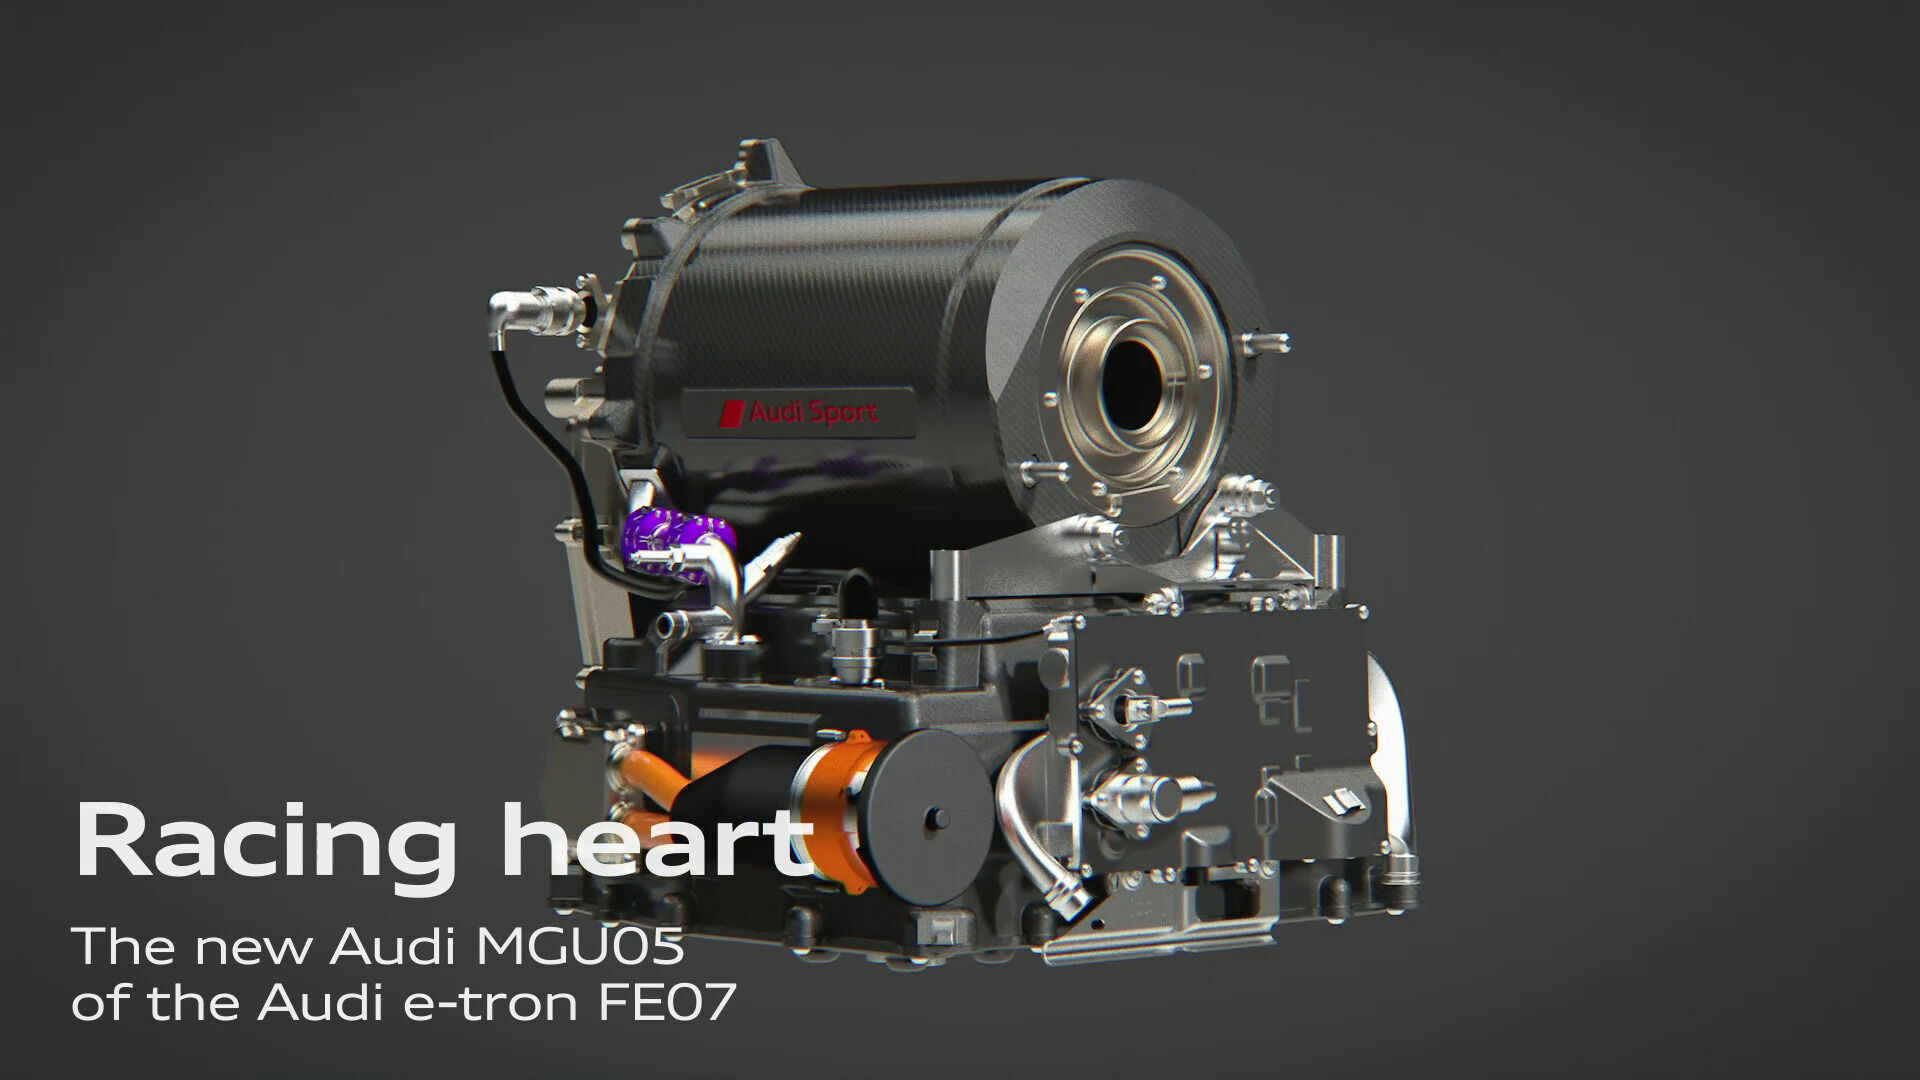 Formula E: The Audi MGU05 in the e-tron FE07